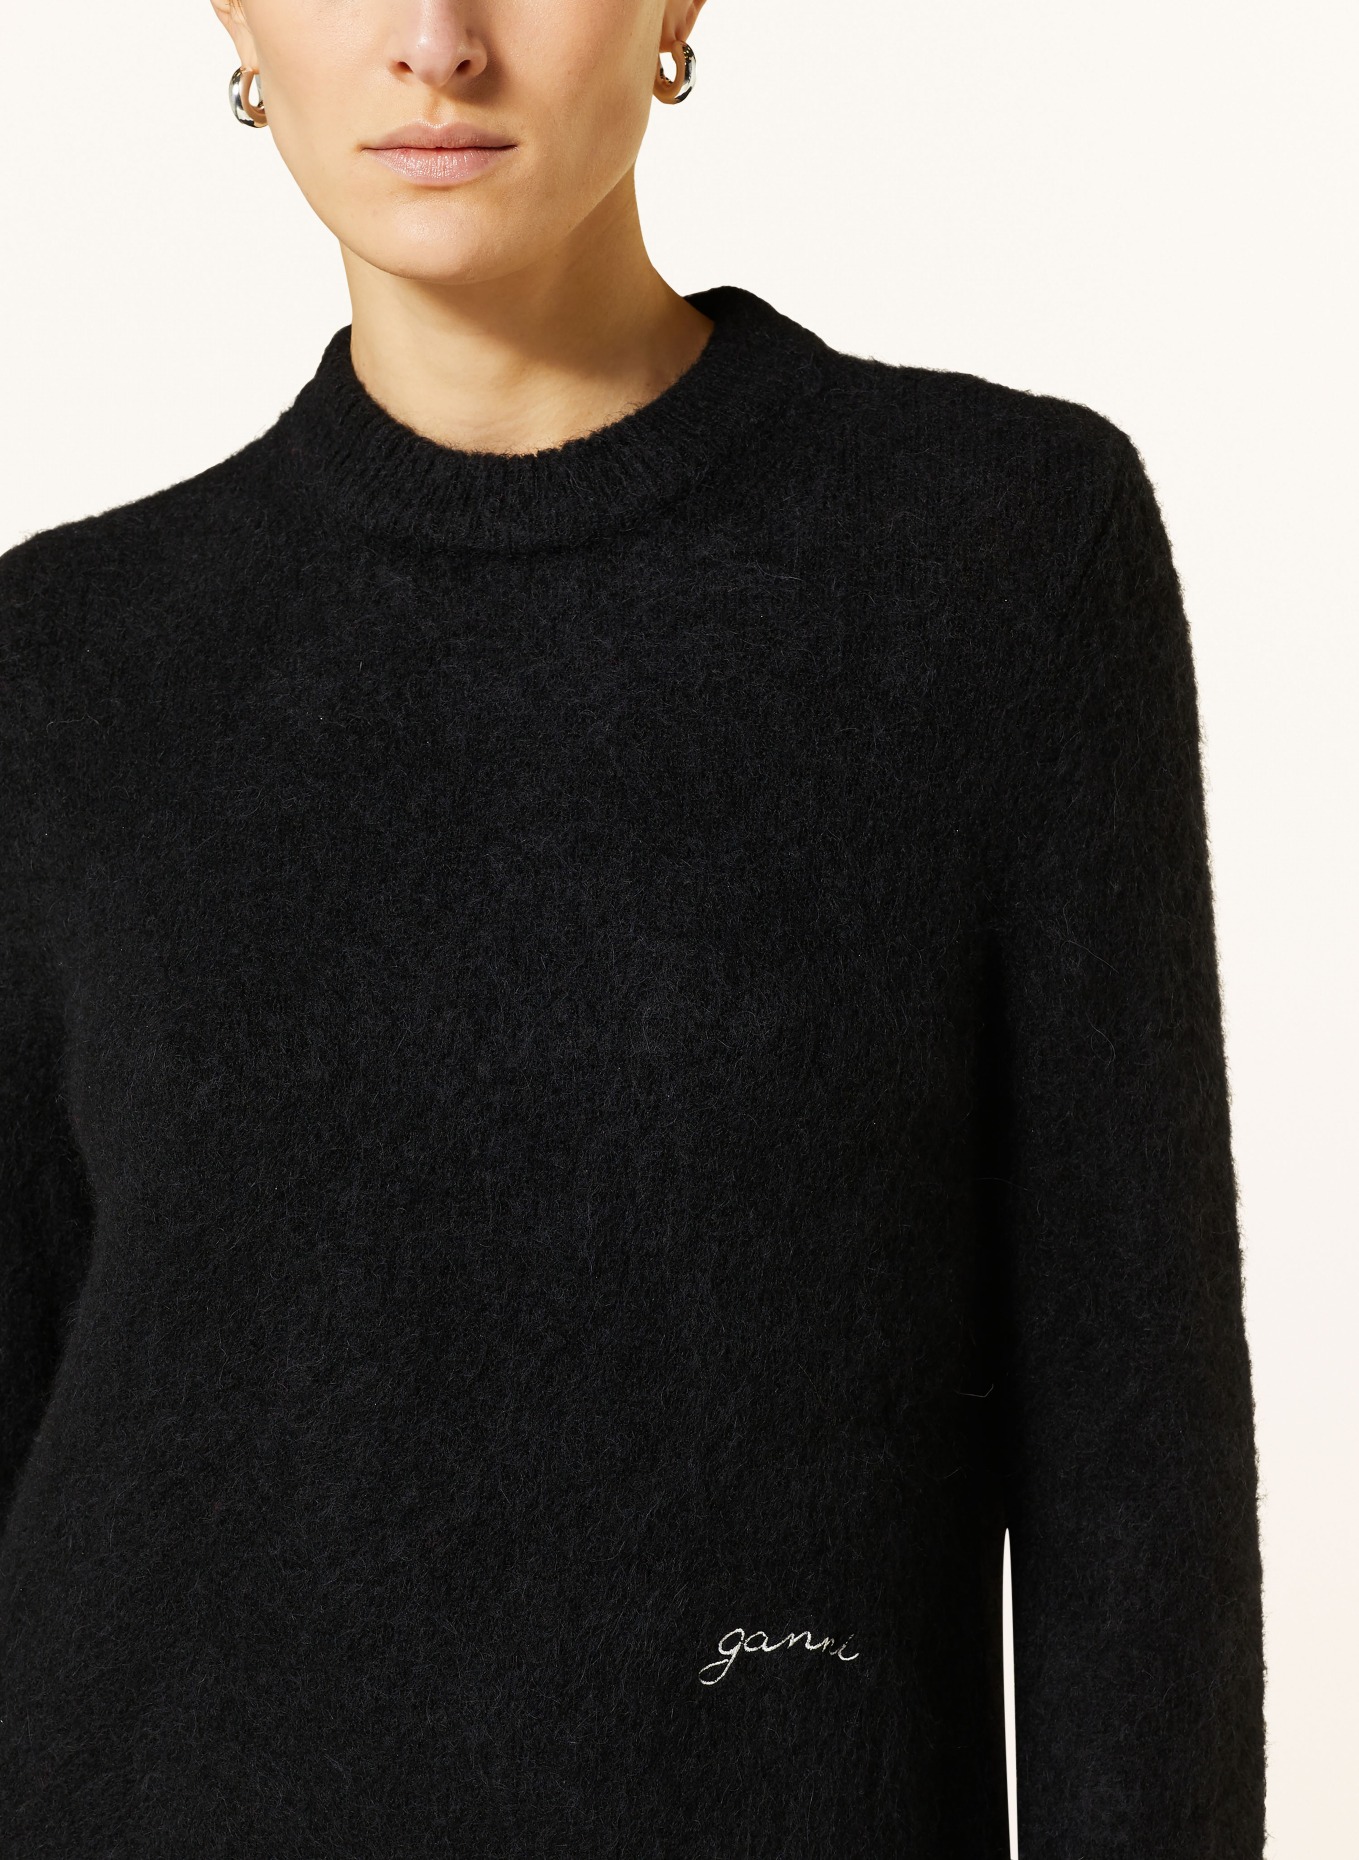 GANNI Sweater with alpaca, Color: BLACK (Image 4)